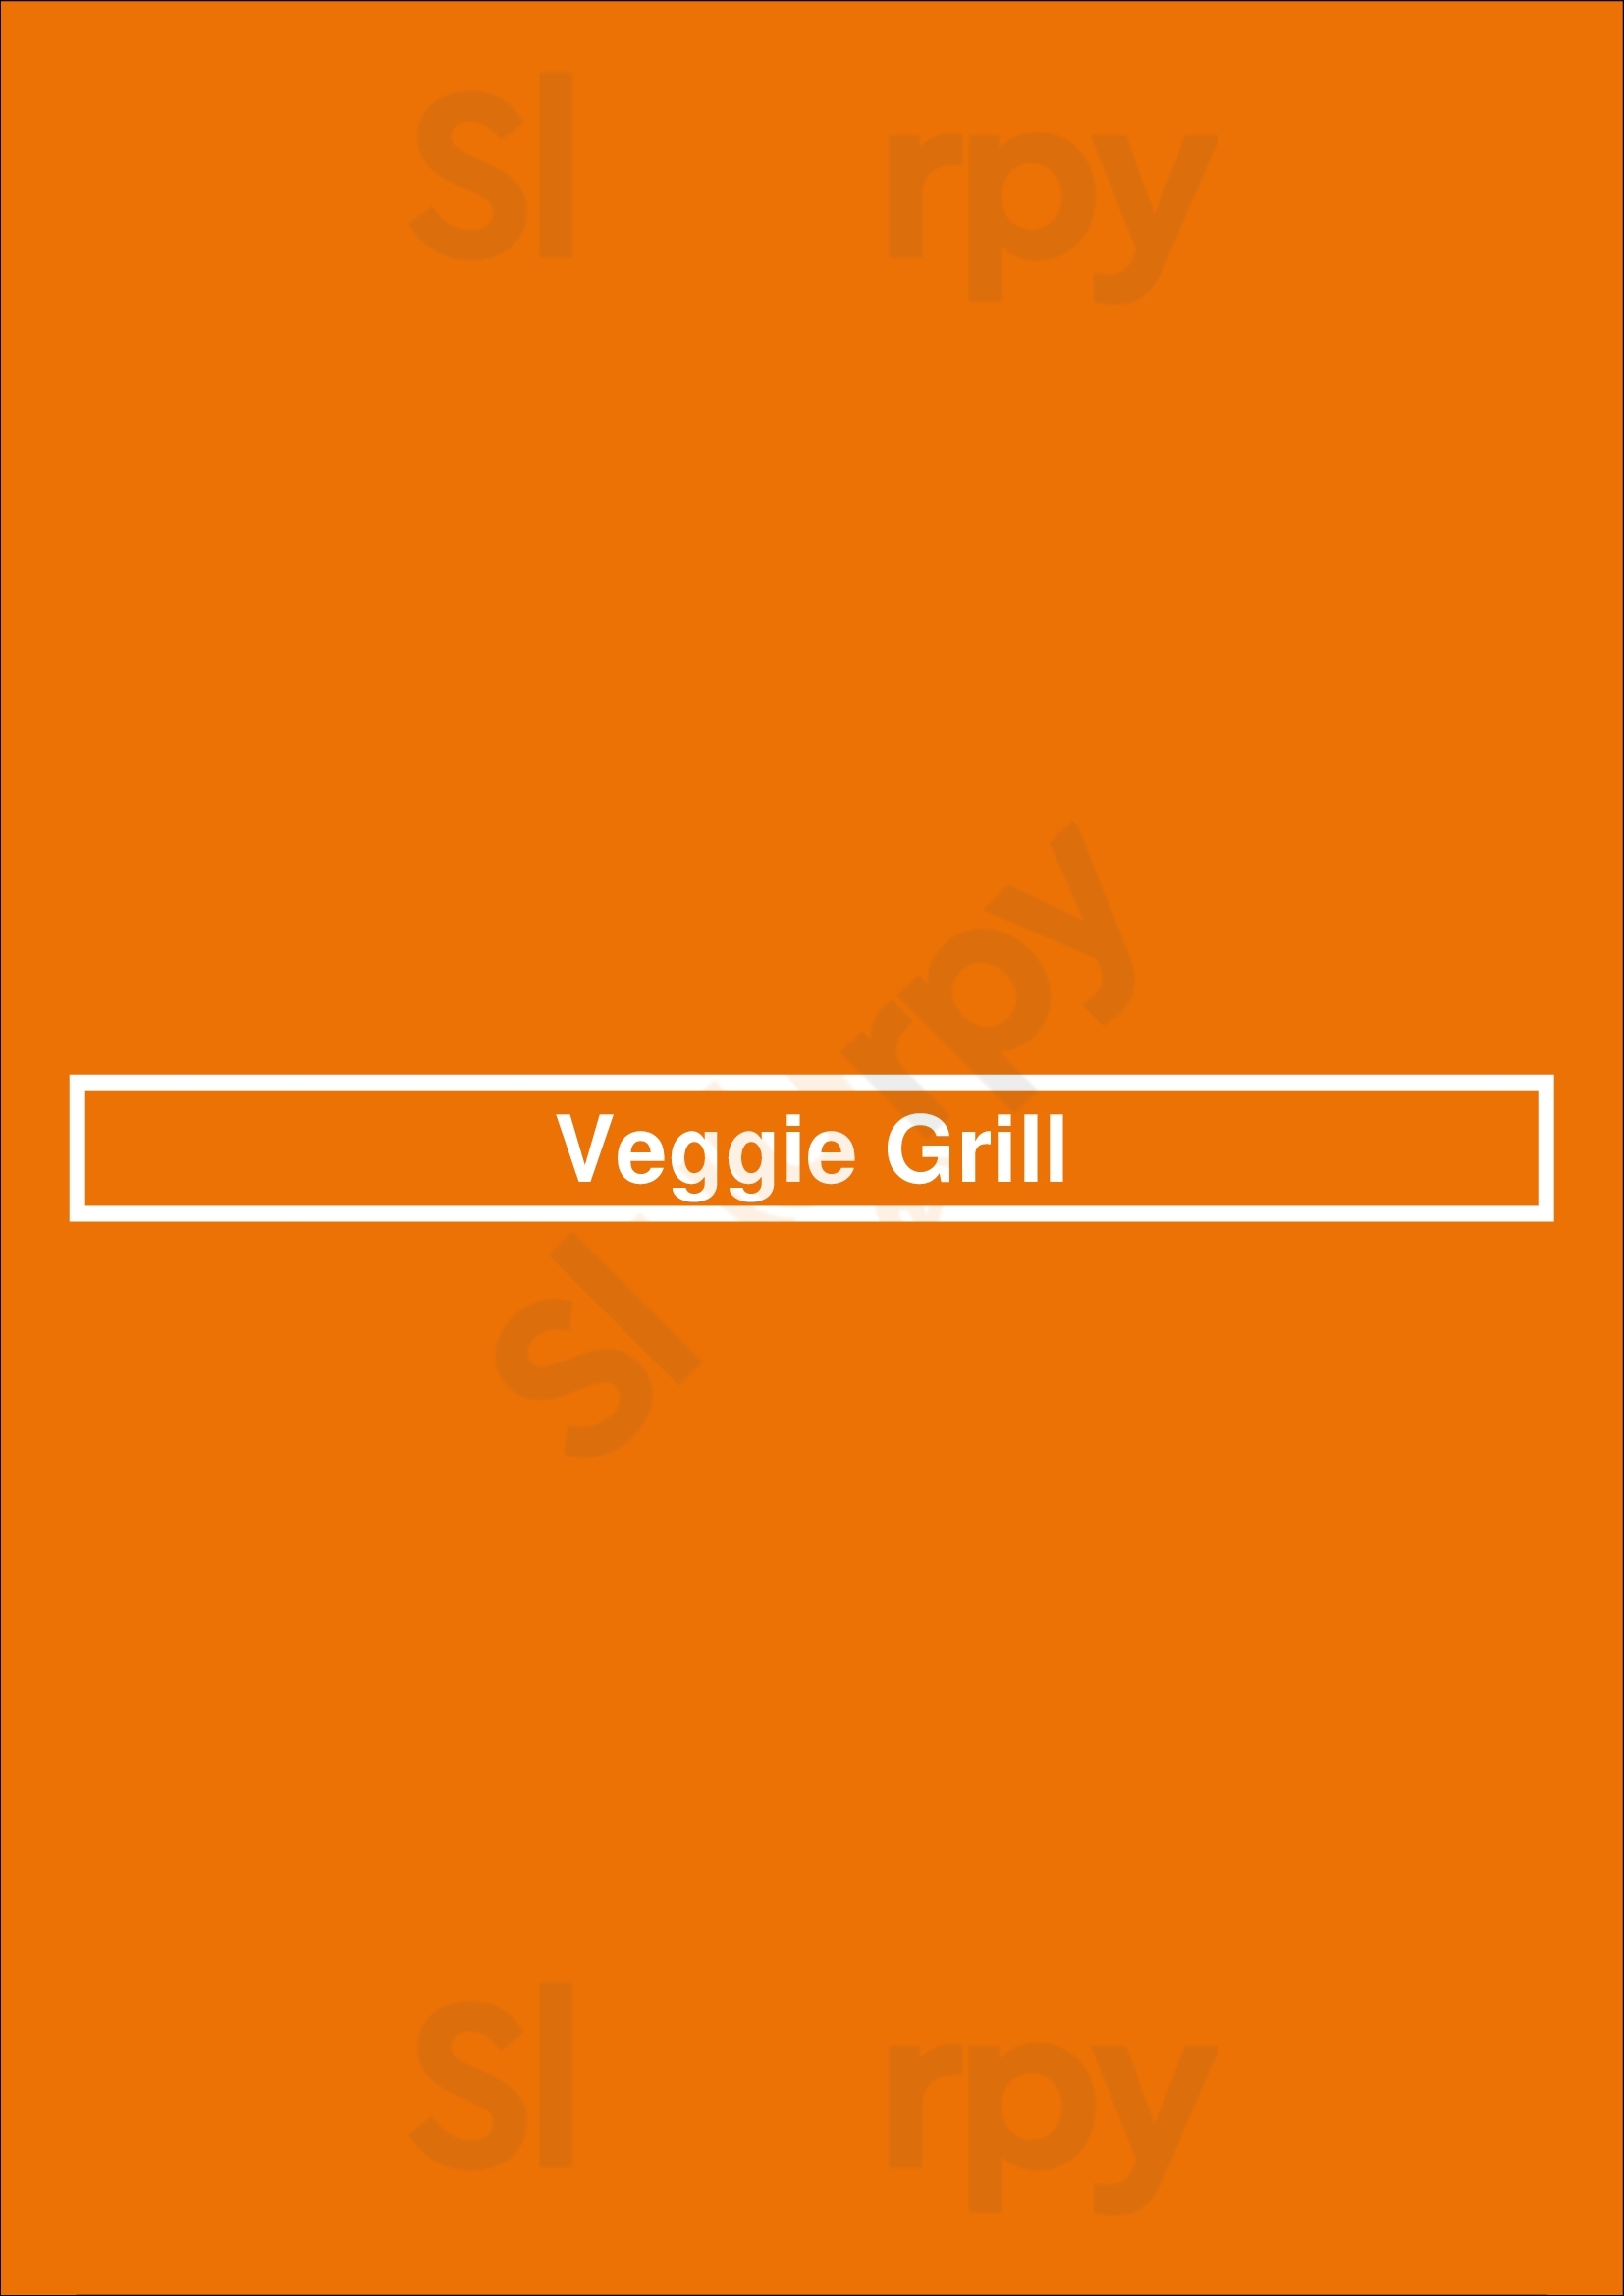 Veggie Grill Los Angeles Menu - 1